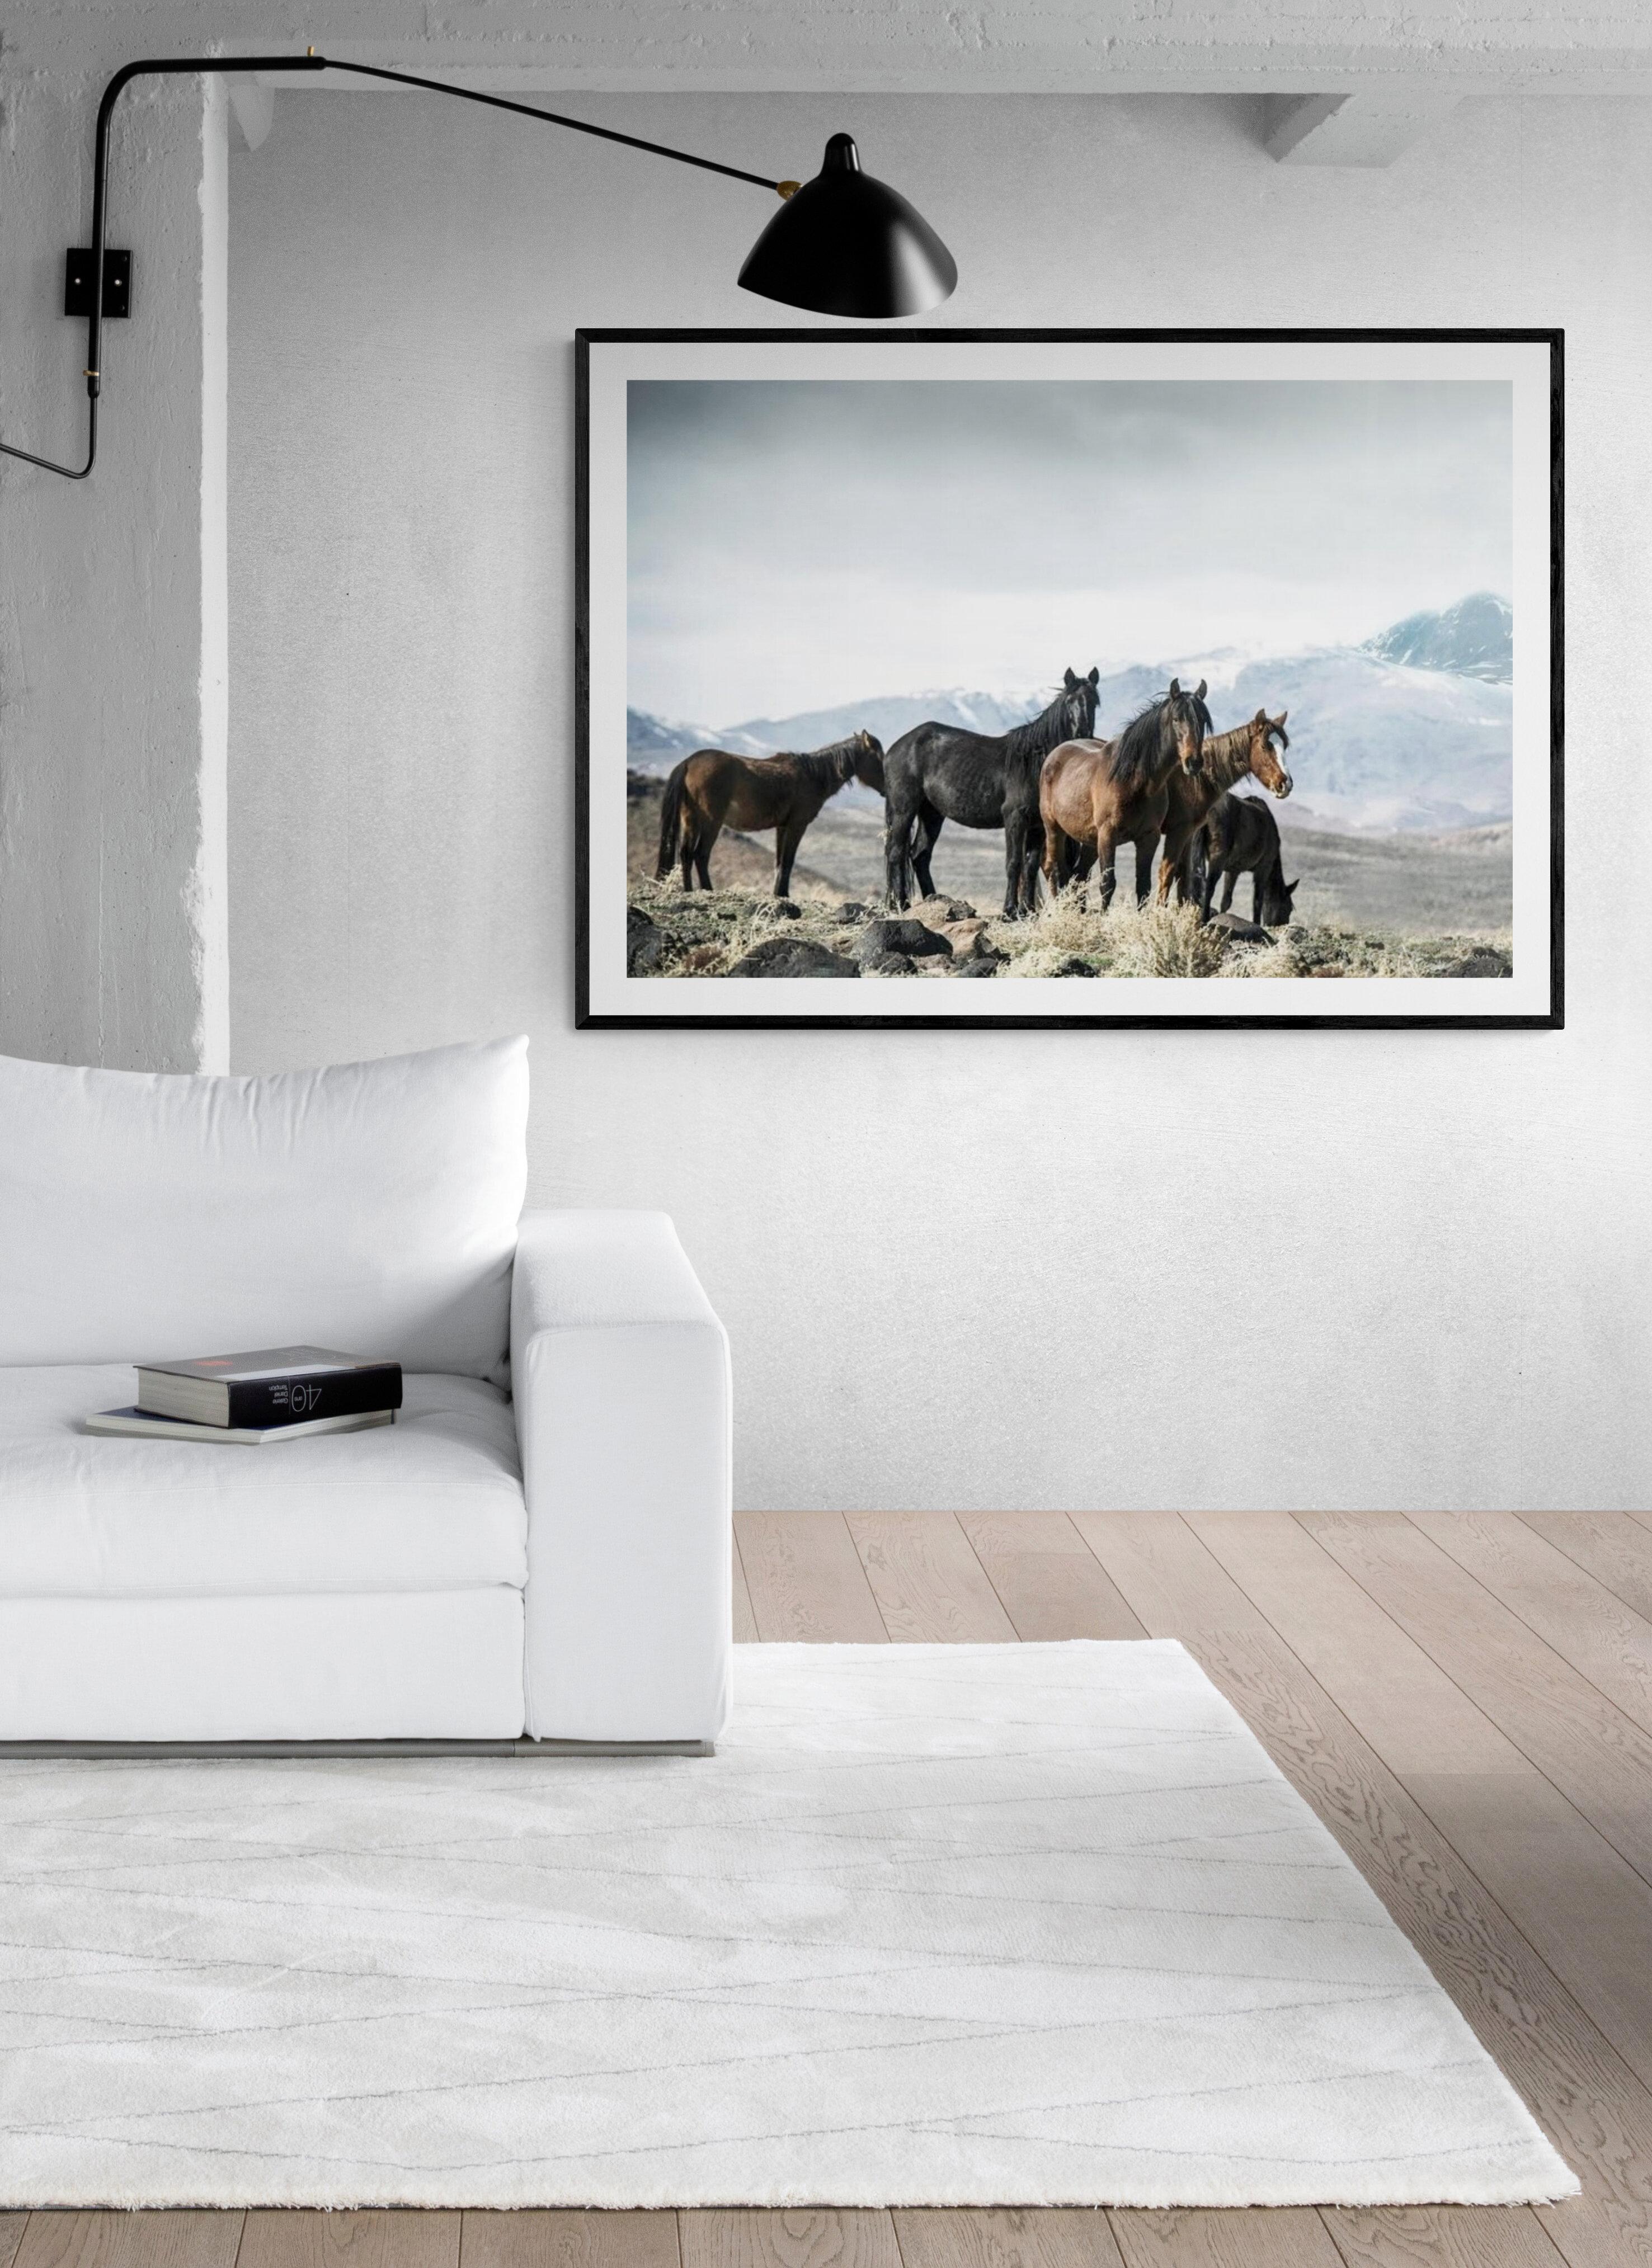 
Il s'agit d'une œuvre contemporaine.  photographie de chevaux sauvages. 
